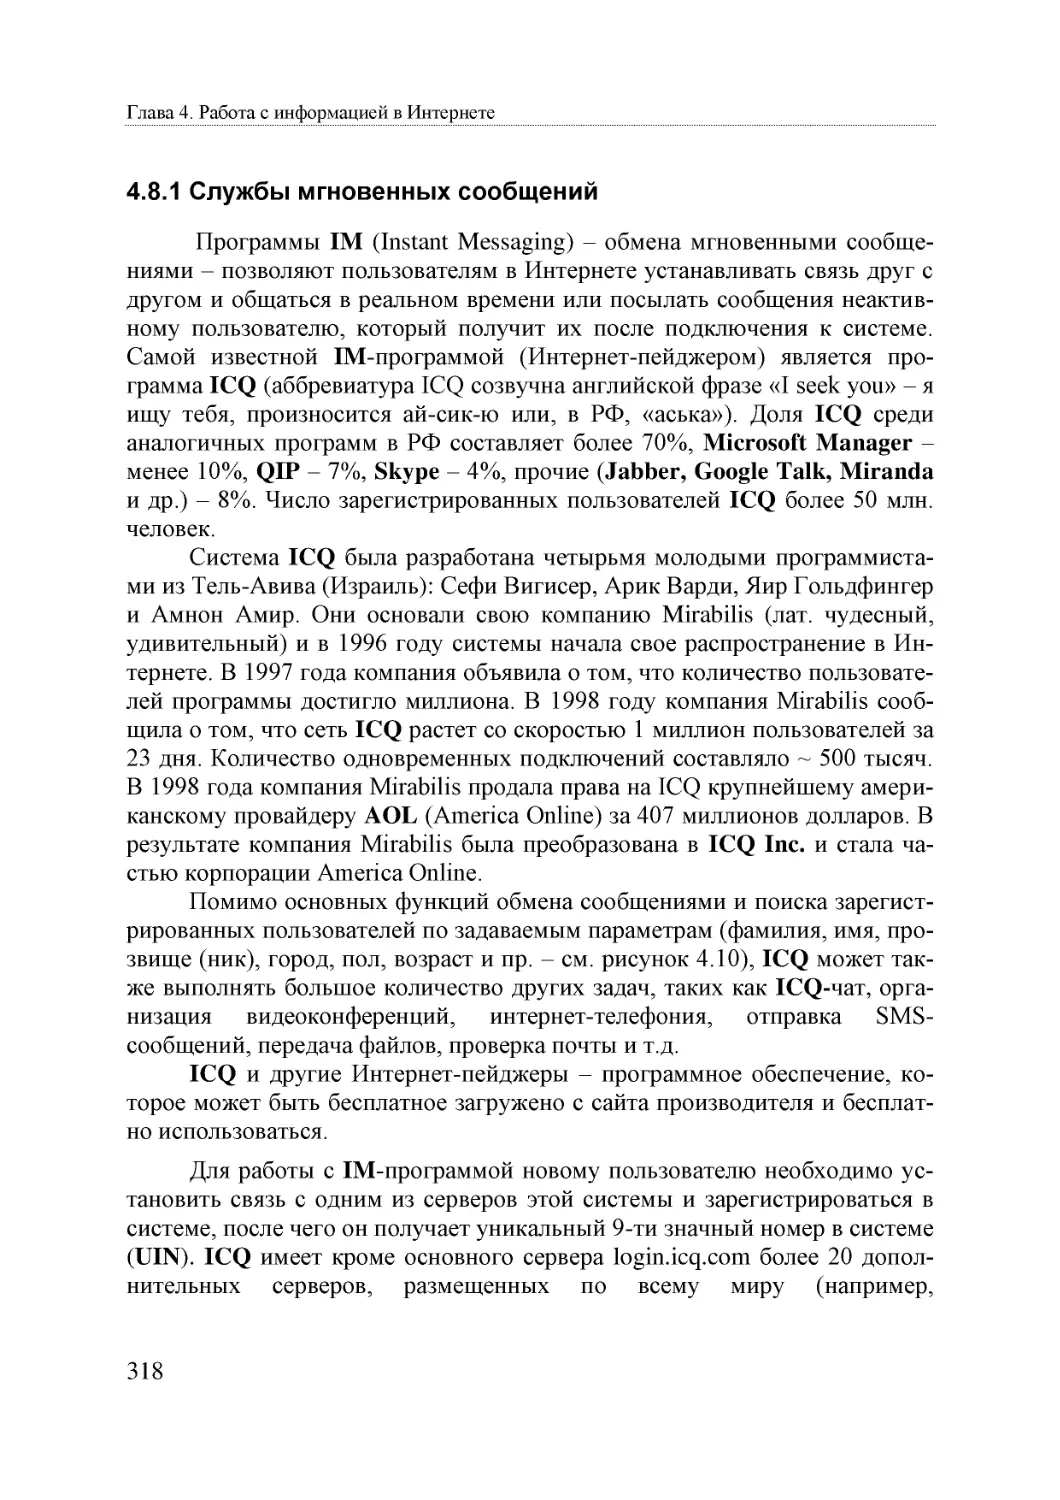 Informatika_Uchebnik_dlya_vuzov_2010 318